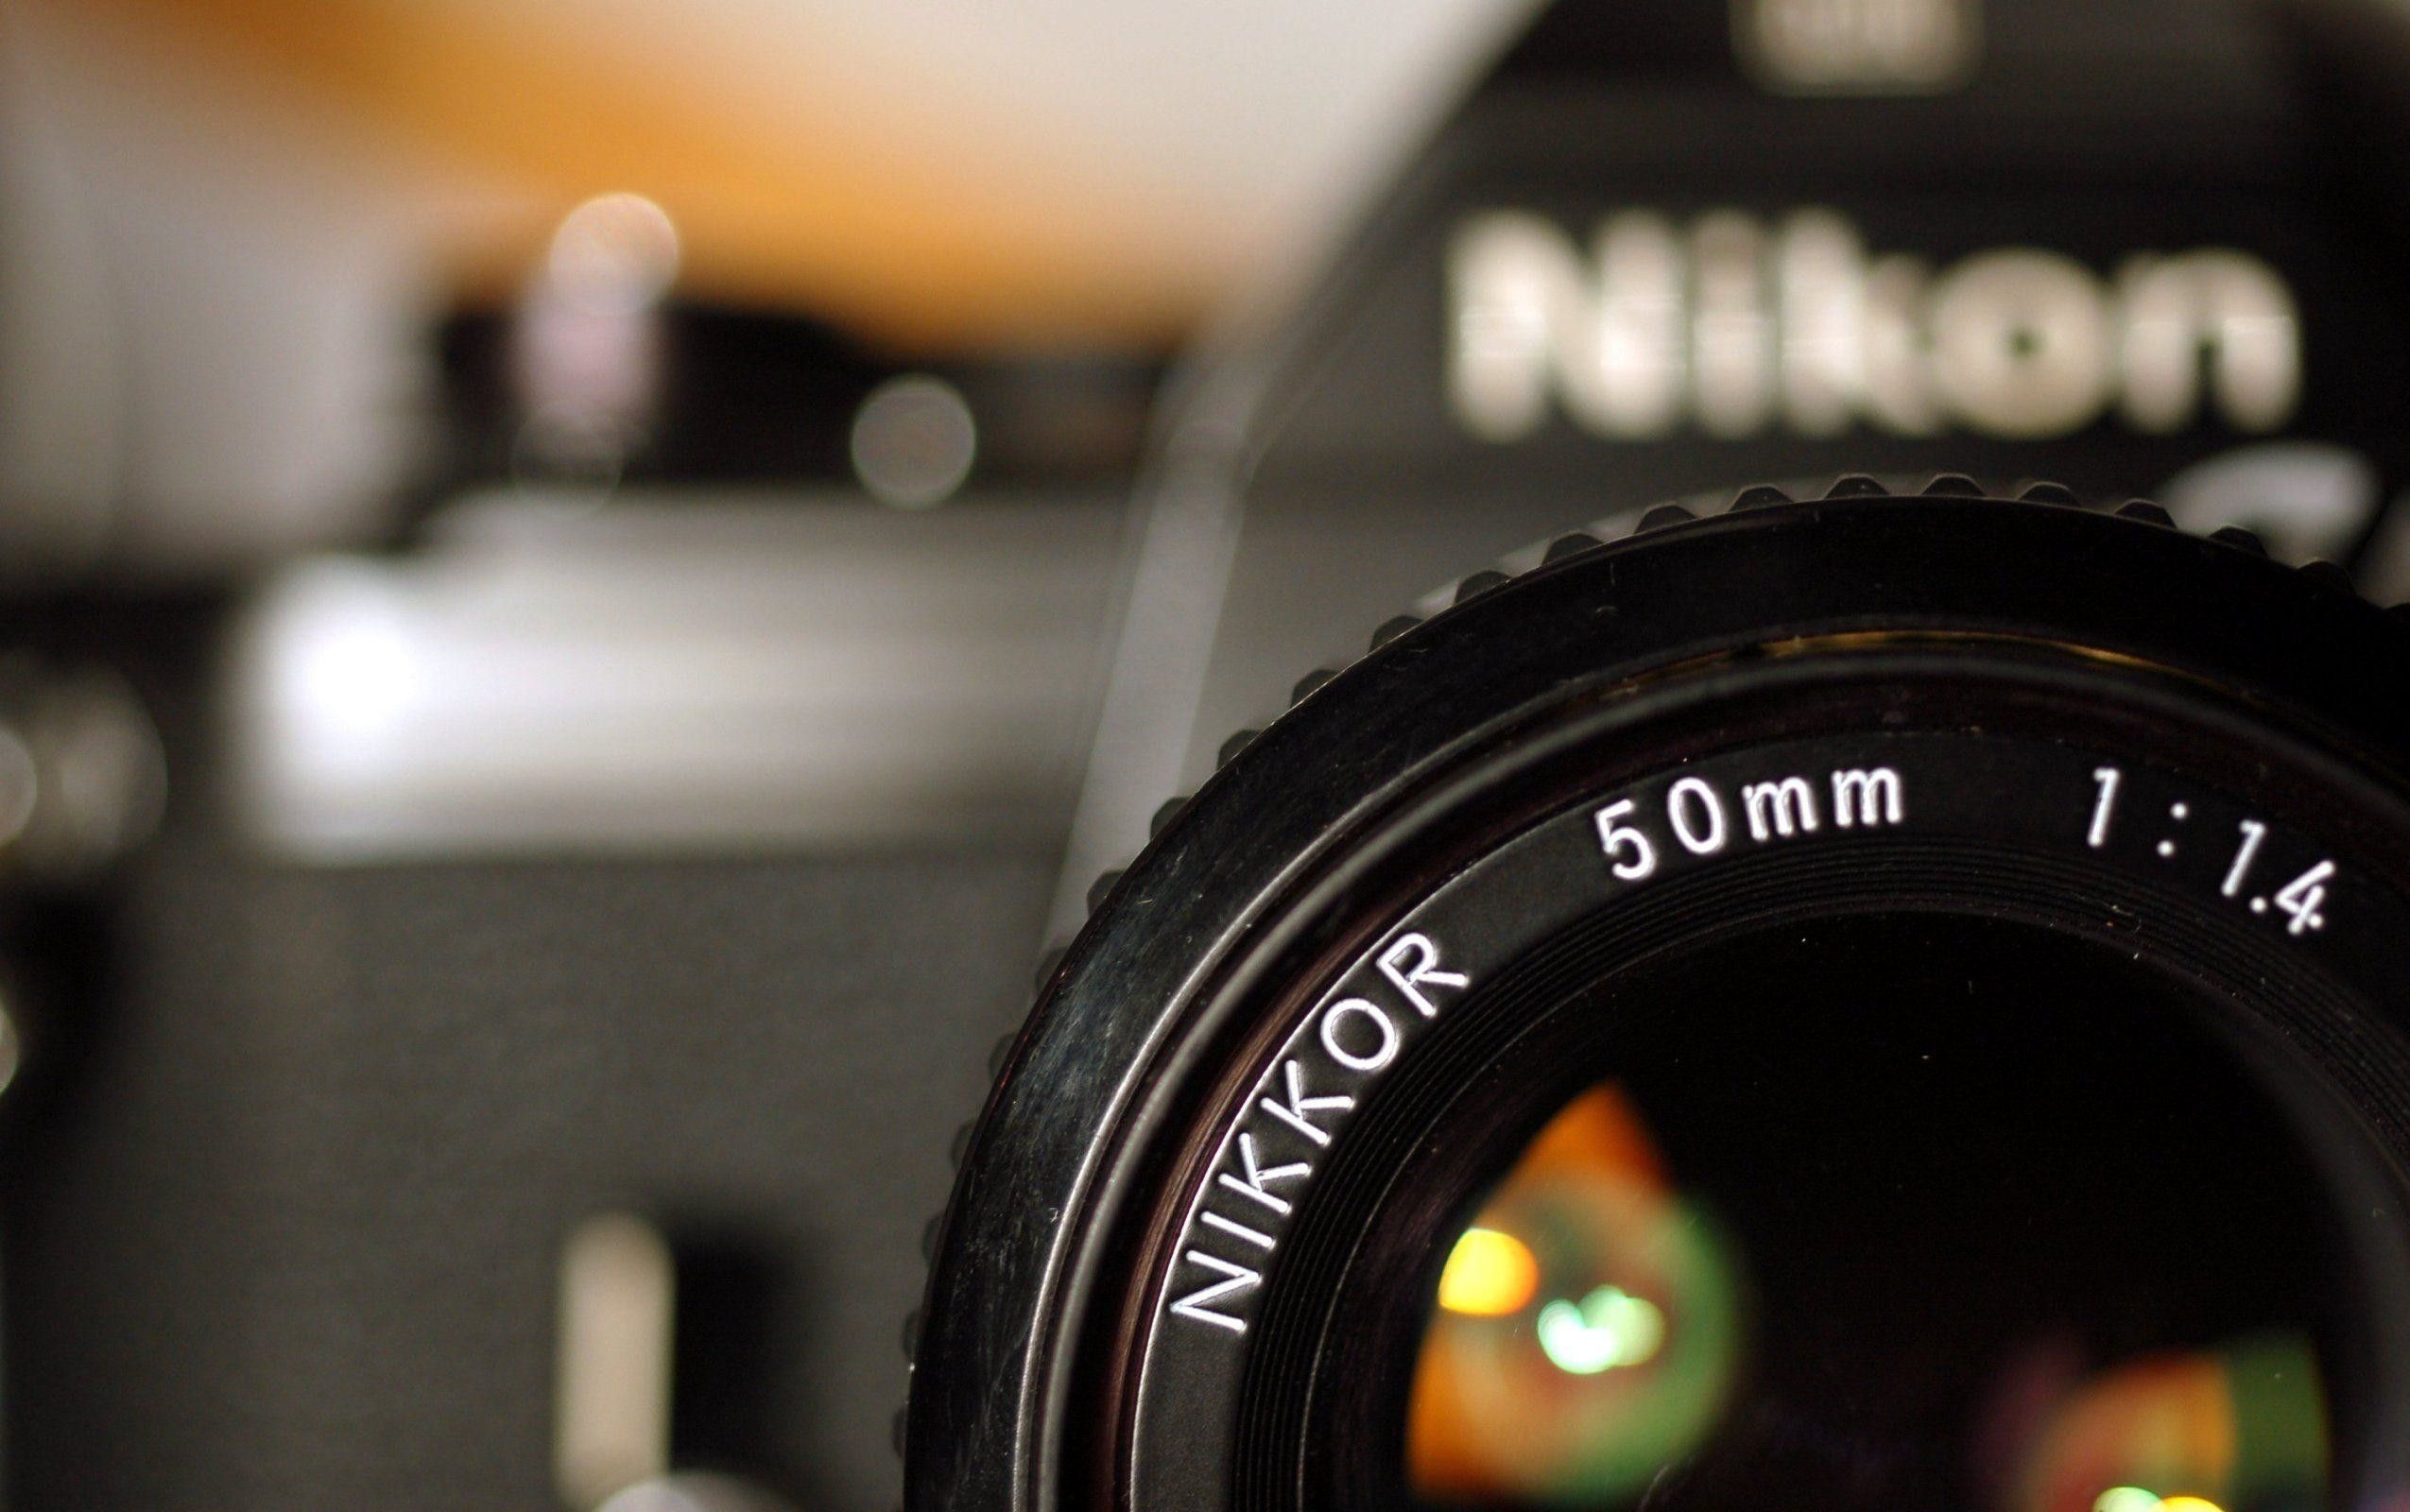 Nikon D5300 DSLR   Camera Basics in 4 steps  Beginner Tutorial  YouTube